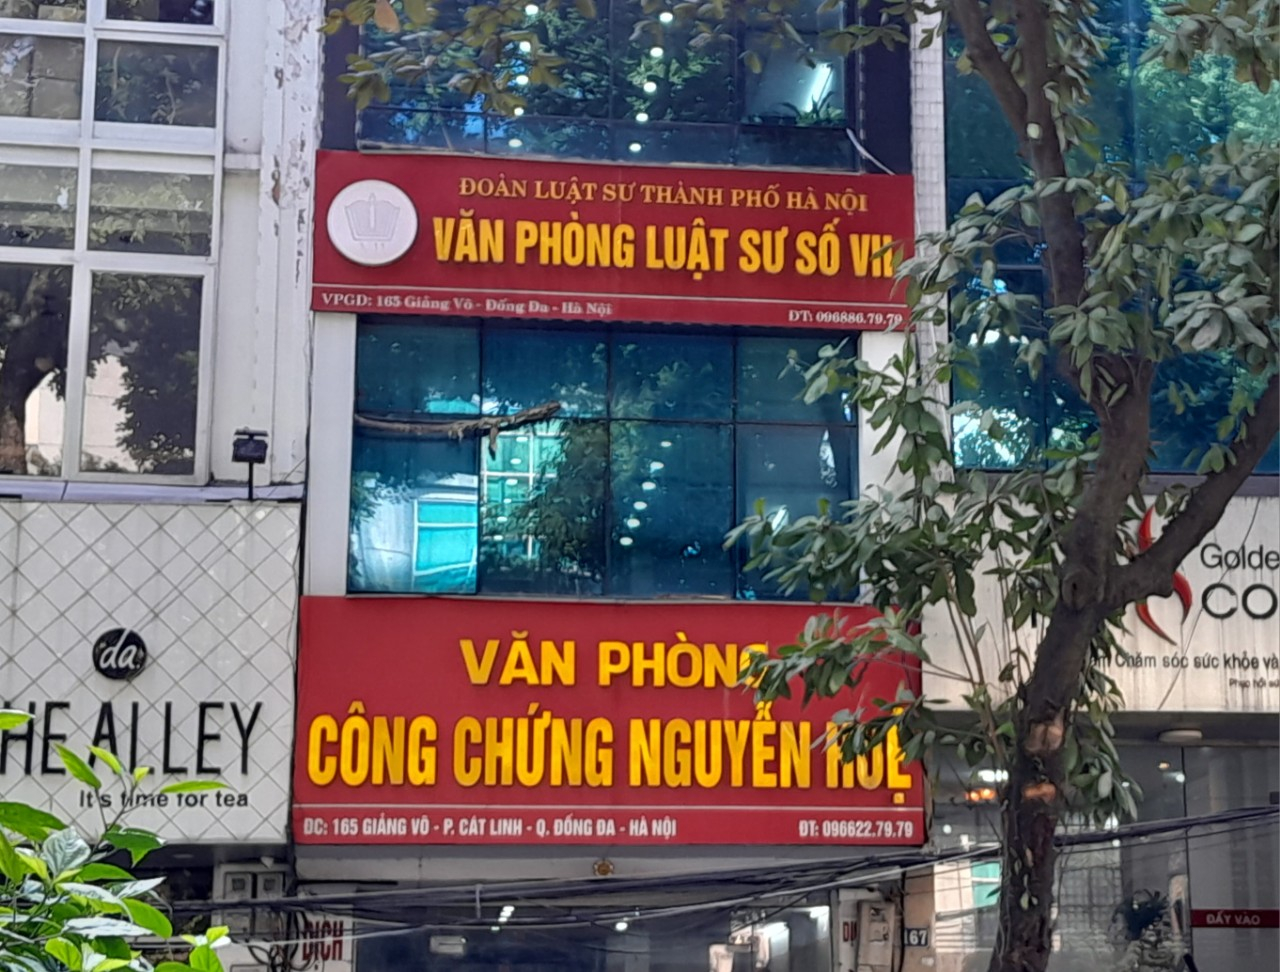 Văn phòng Công chứng Nguyễn Huệ có trụ sở tại số 165 Giảng Võ, phường Cát Linh, quận Đống Đa, thành phố Hà Nội. Ảnh N. Trường